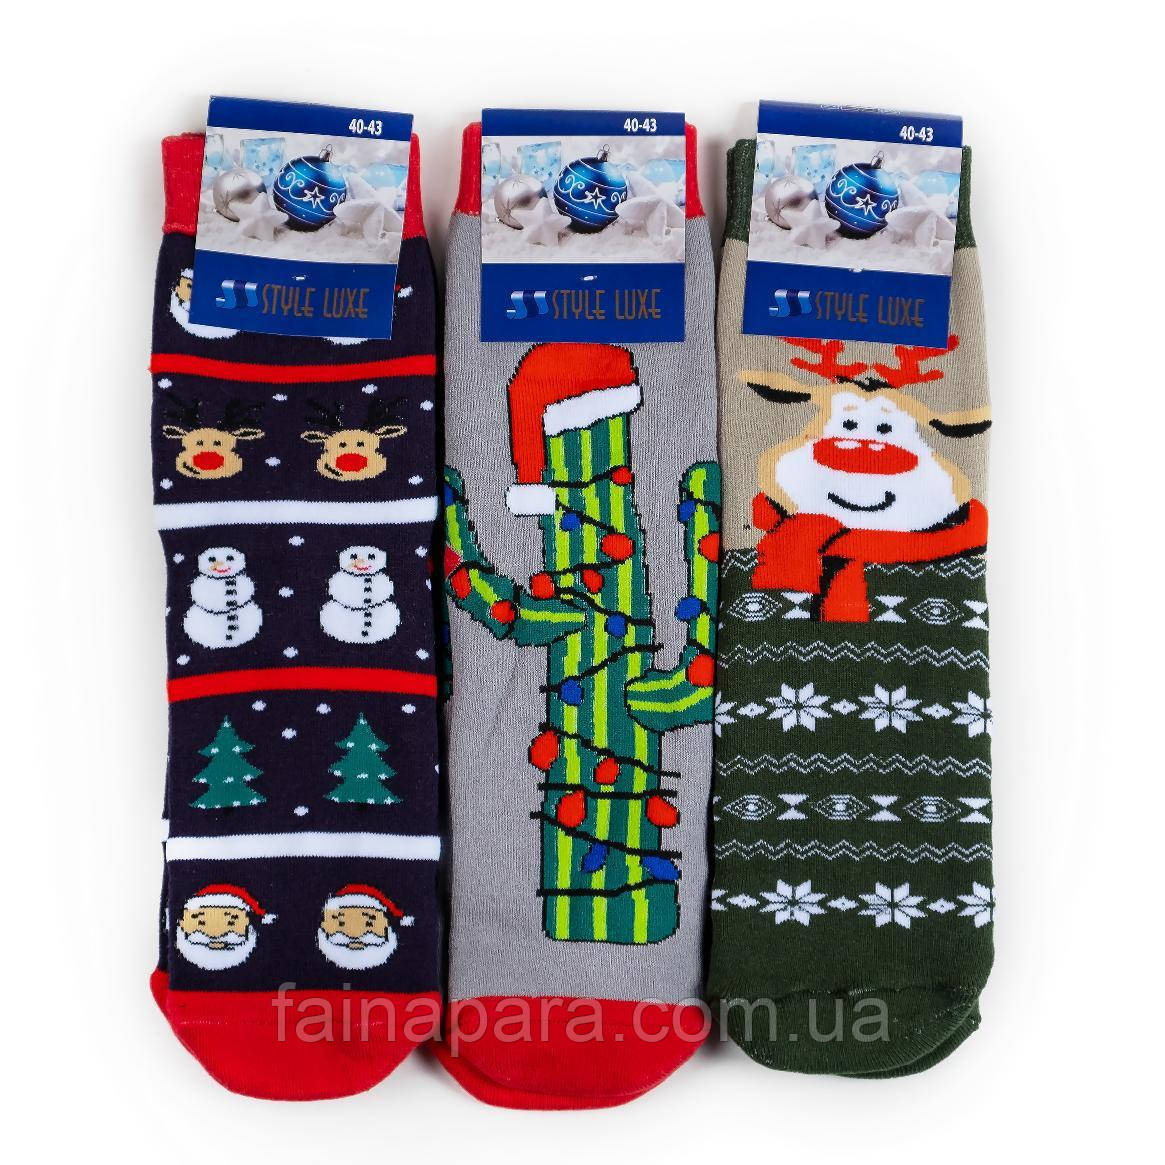 Чоловічі махрові новорічні шкарпетки на подарунок